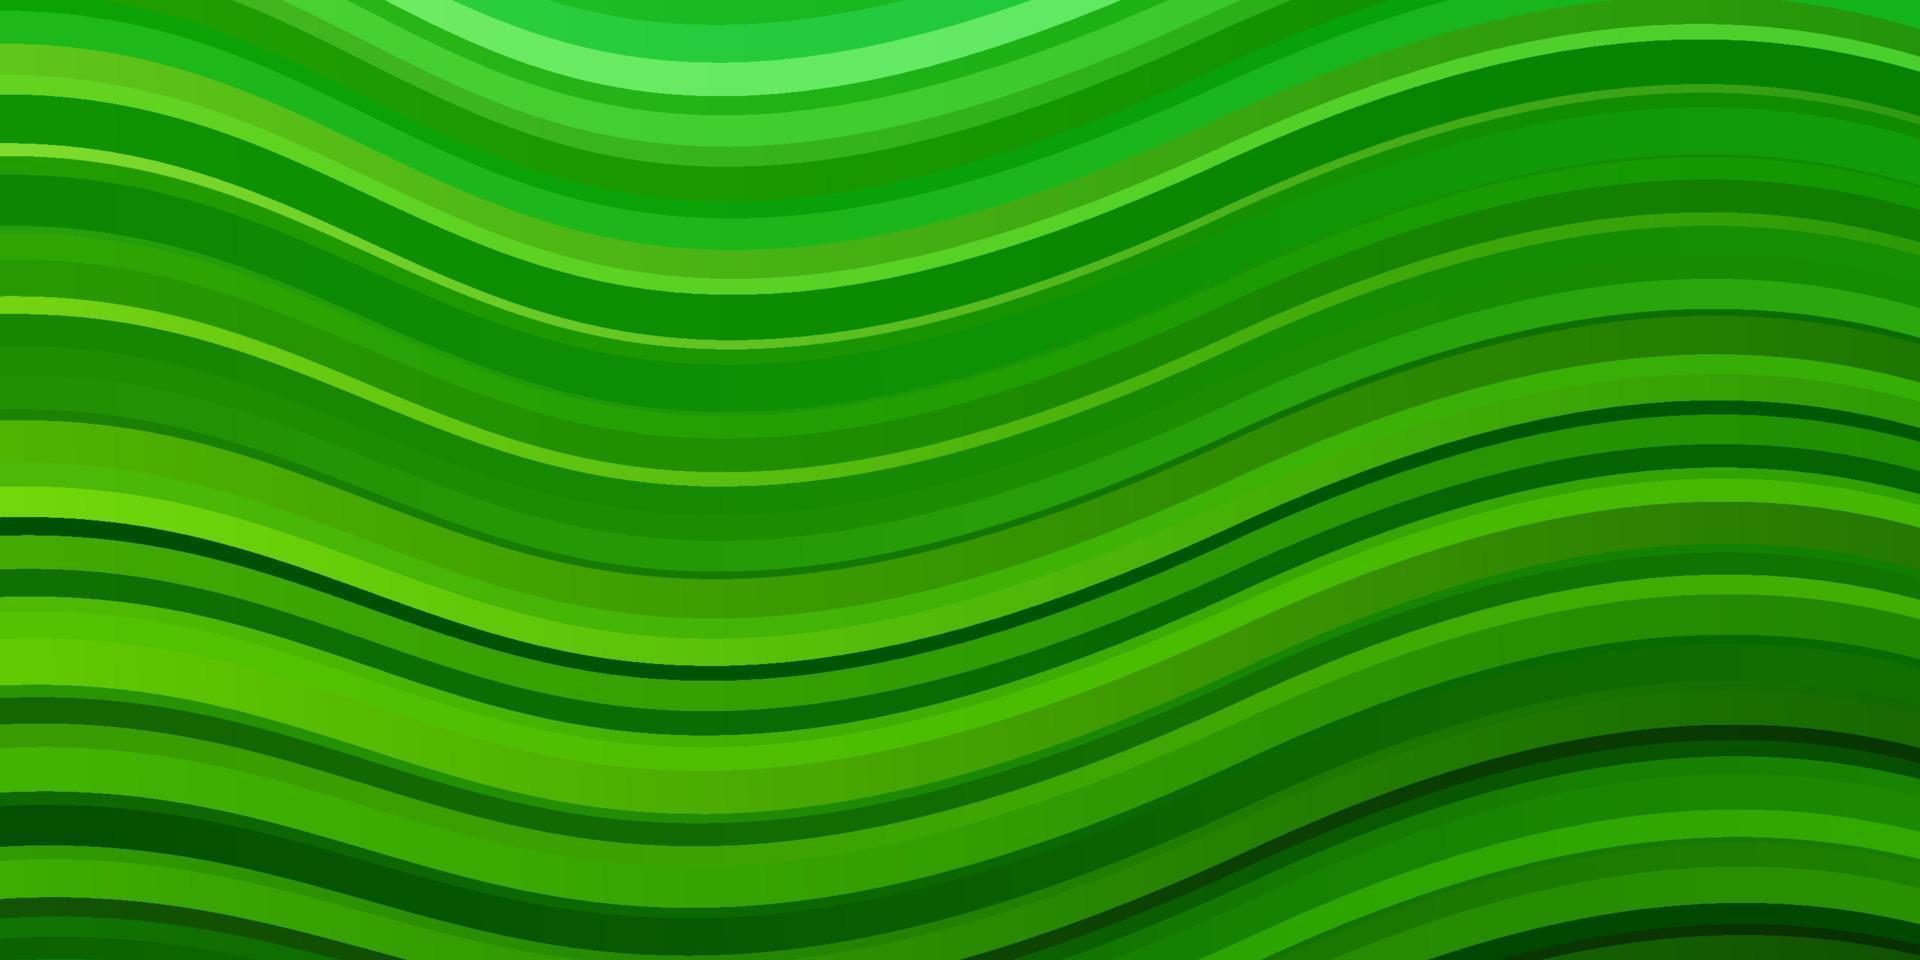 padrão de vetor verde claro com linhas.